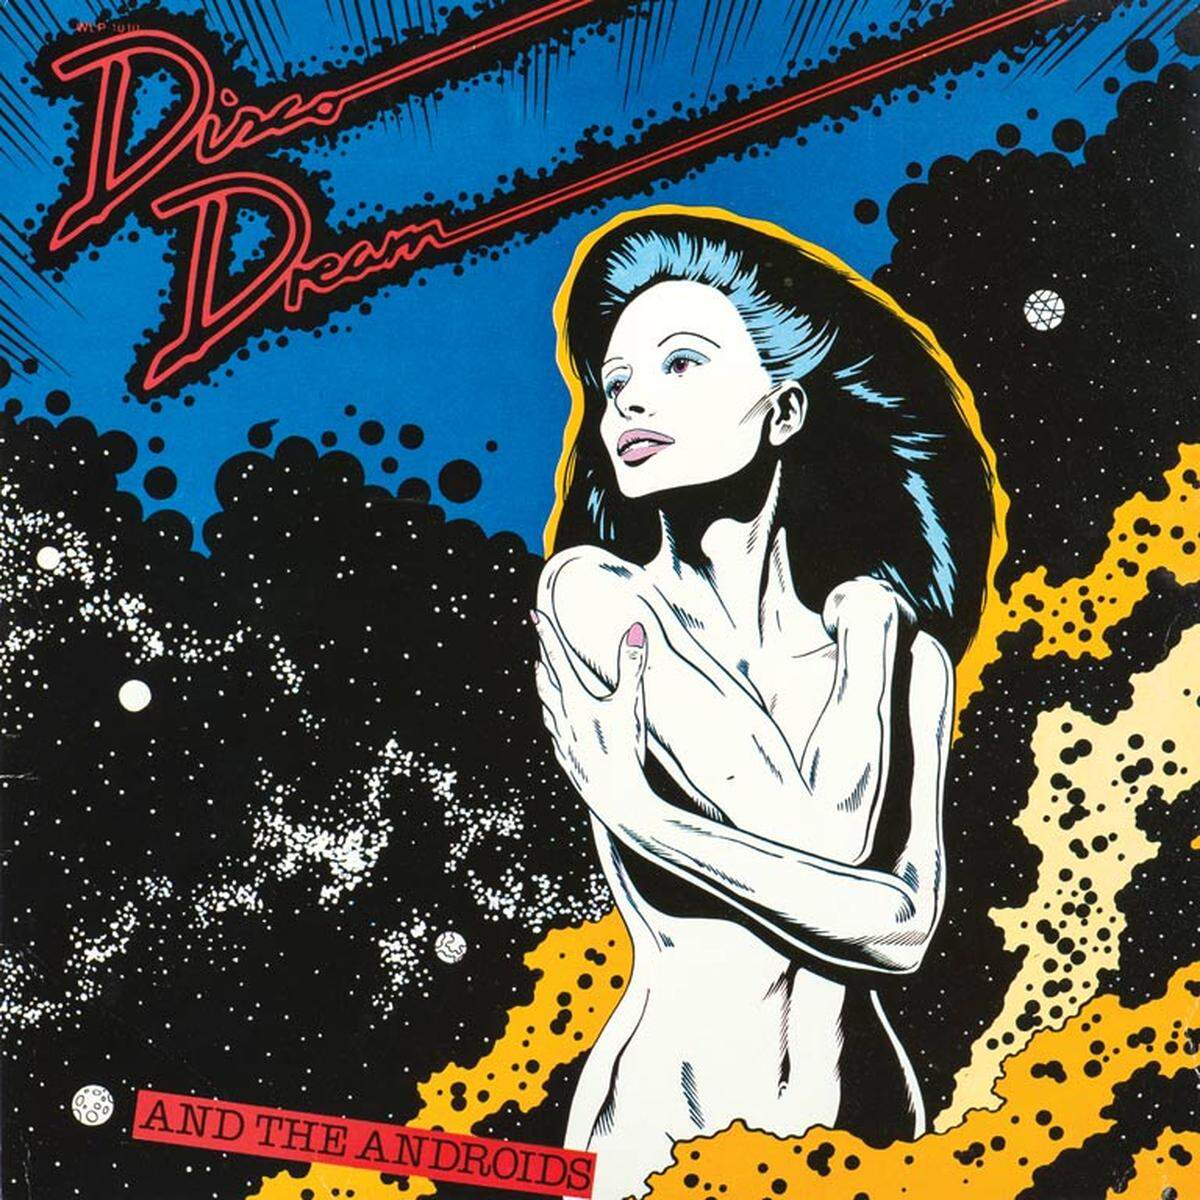 Ein neues Buch feiert die exzentrischen Plattencover der Disco-Ära. Ein Rückblick auf die späten 70er und frühen 80er mit Neonlicht, Rollschuh-Fetisch und sexuellen Anspielungen:"Disco Dream And The Androids" (Uniwave, 1980)